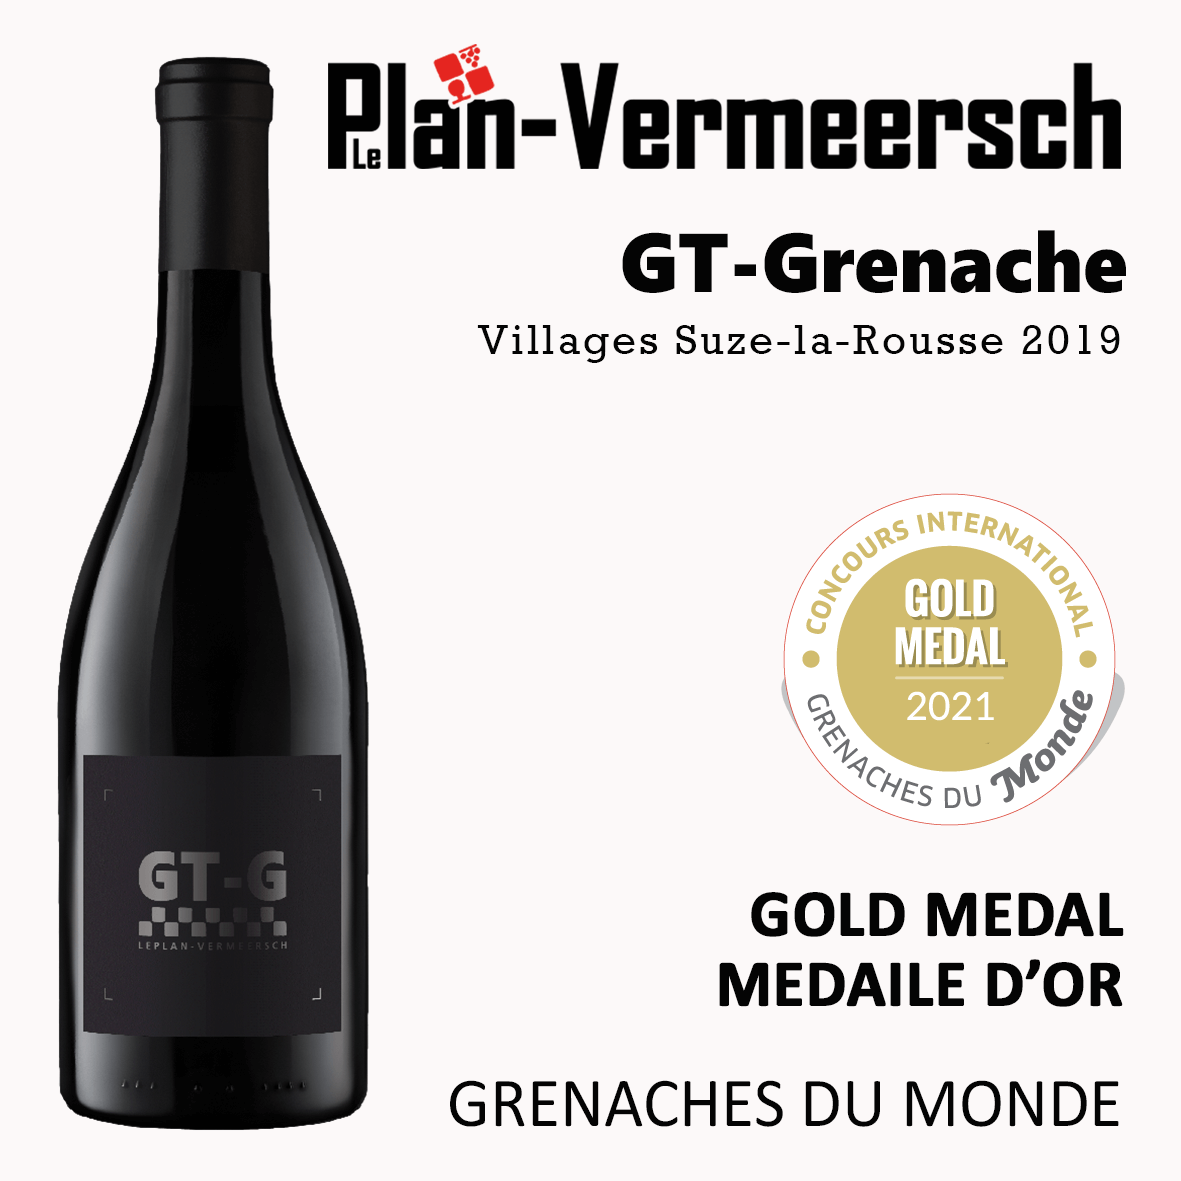 Bottle wine Grenache GT-Grenache gold medal Grenaches du monde LePlan-Vermeersch